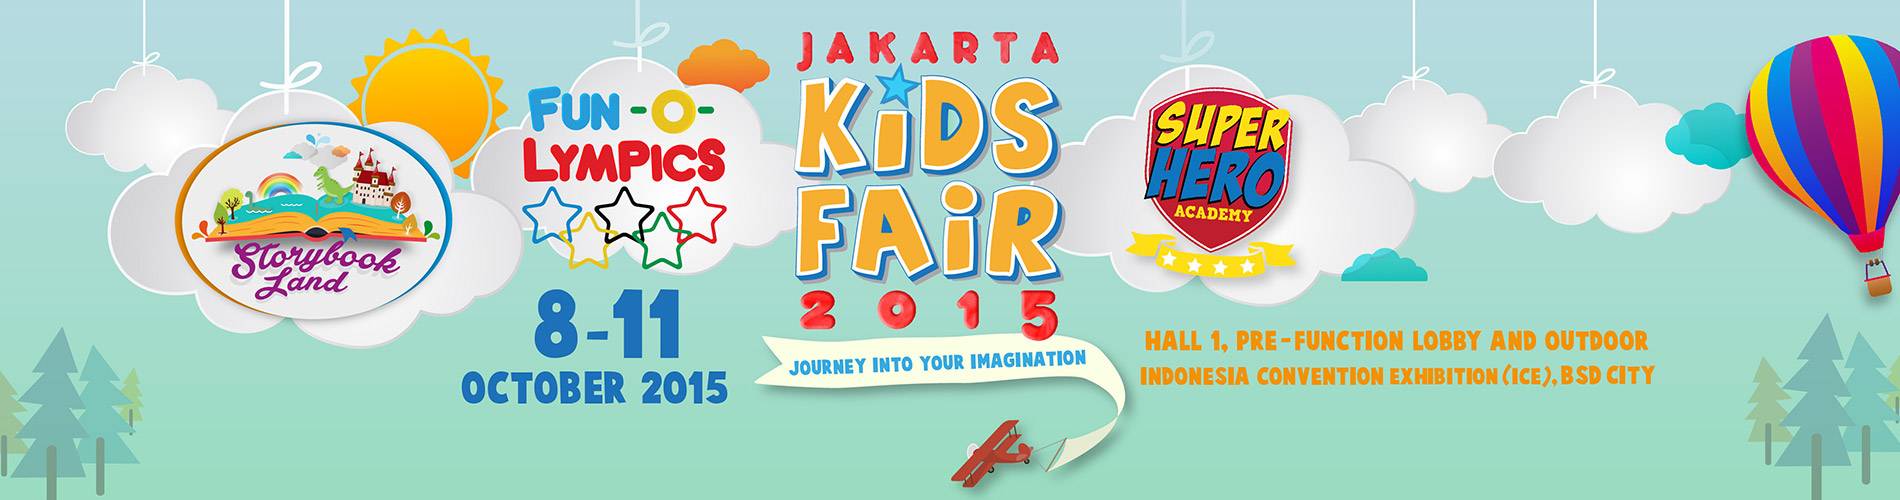 Ada Keseruan Apa di Jakarta Kids Fair 2015?